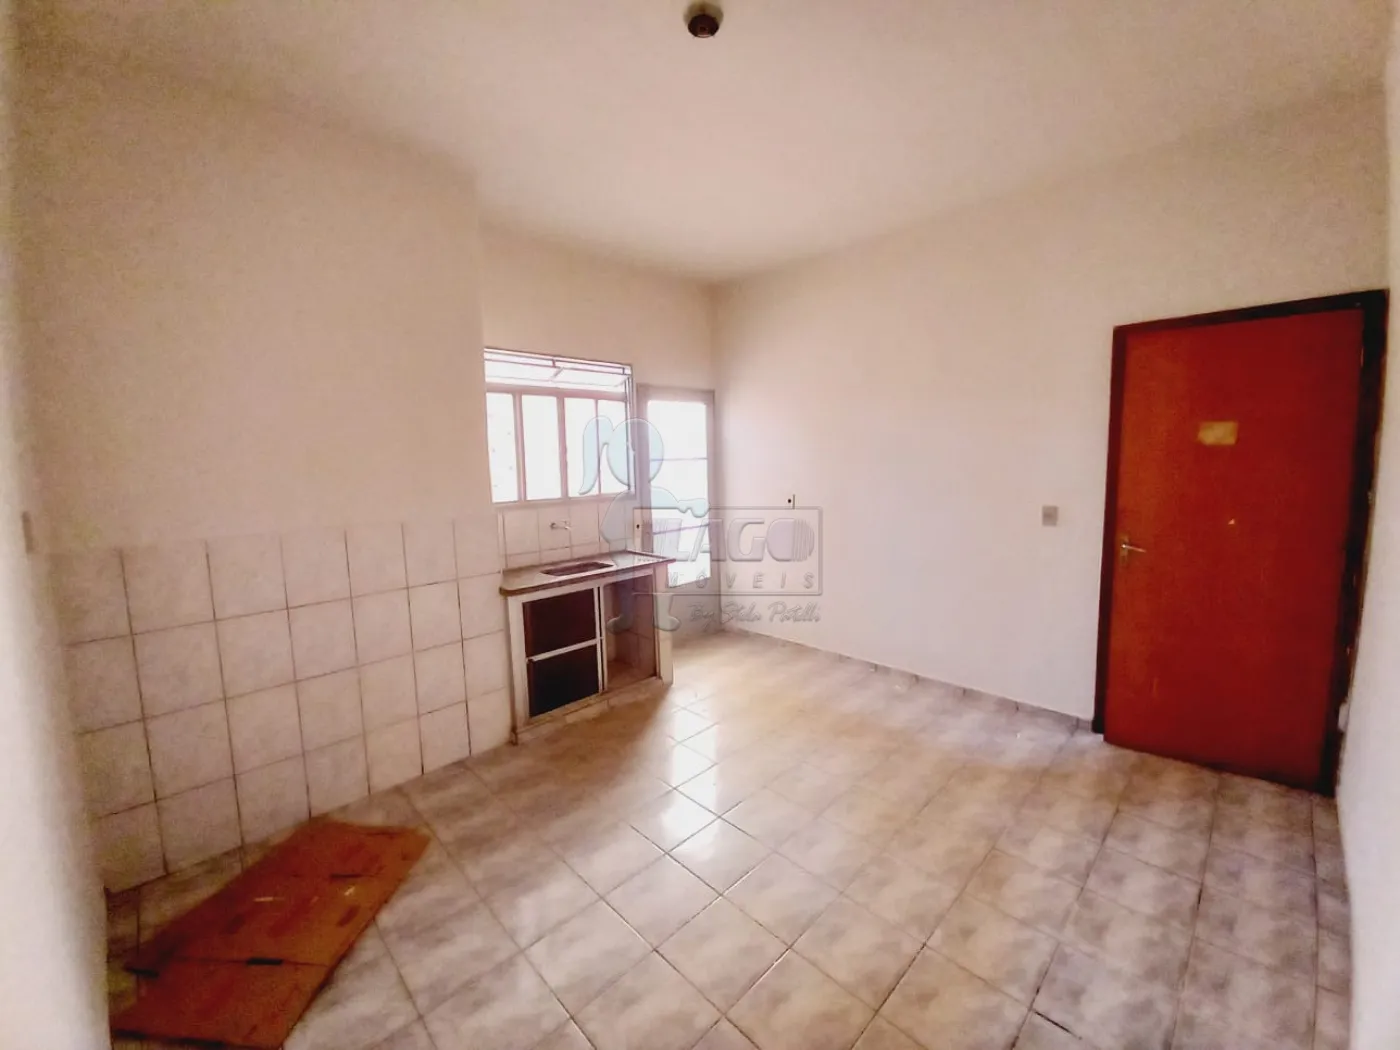 Alugar Casas / Padrão em Ribeirão Preto R$ 650,00 - Foto 7